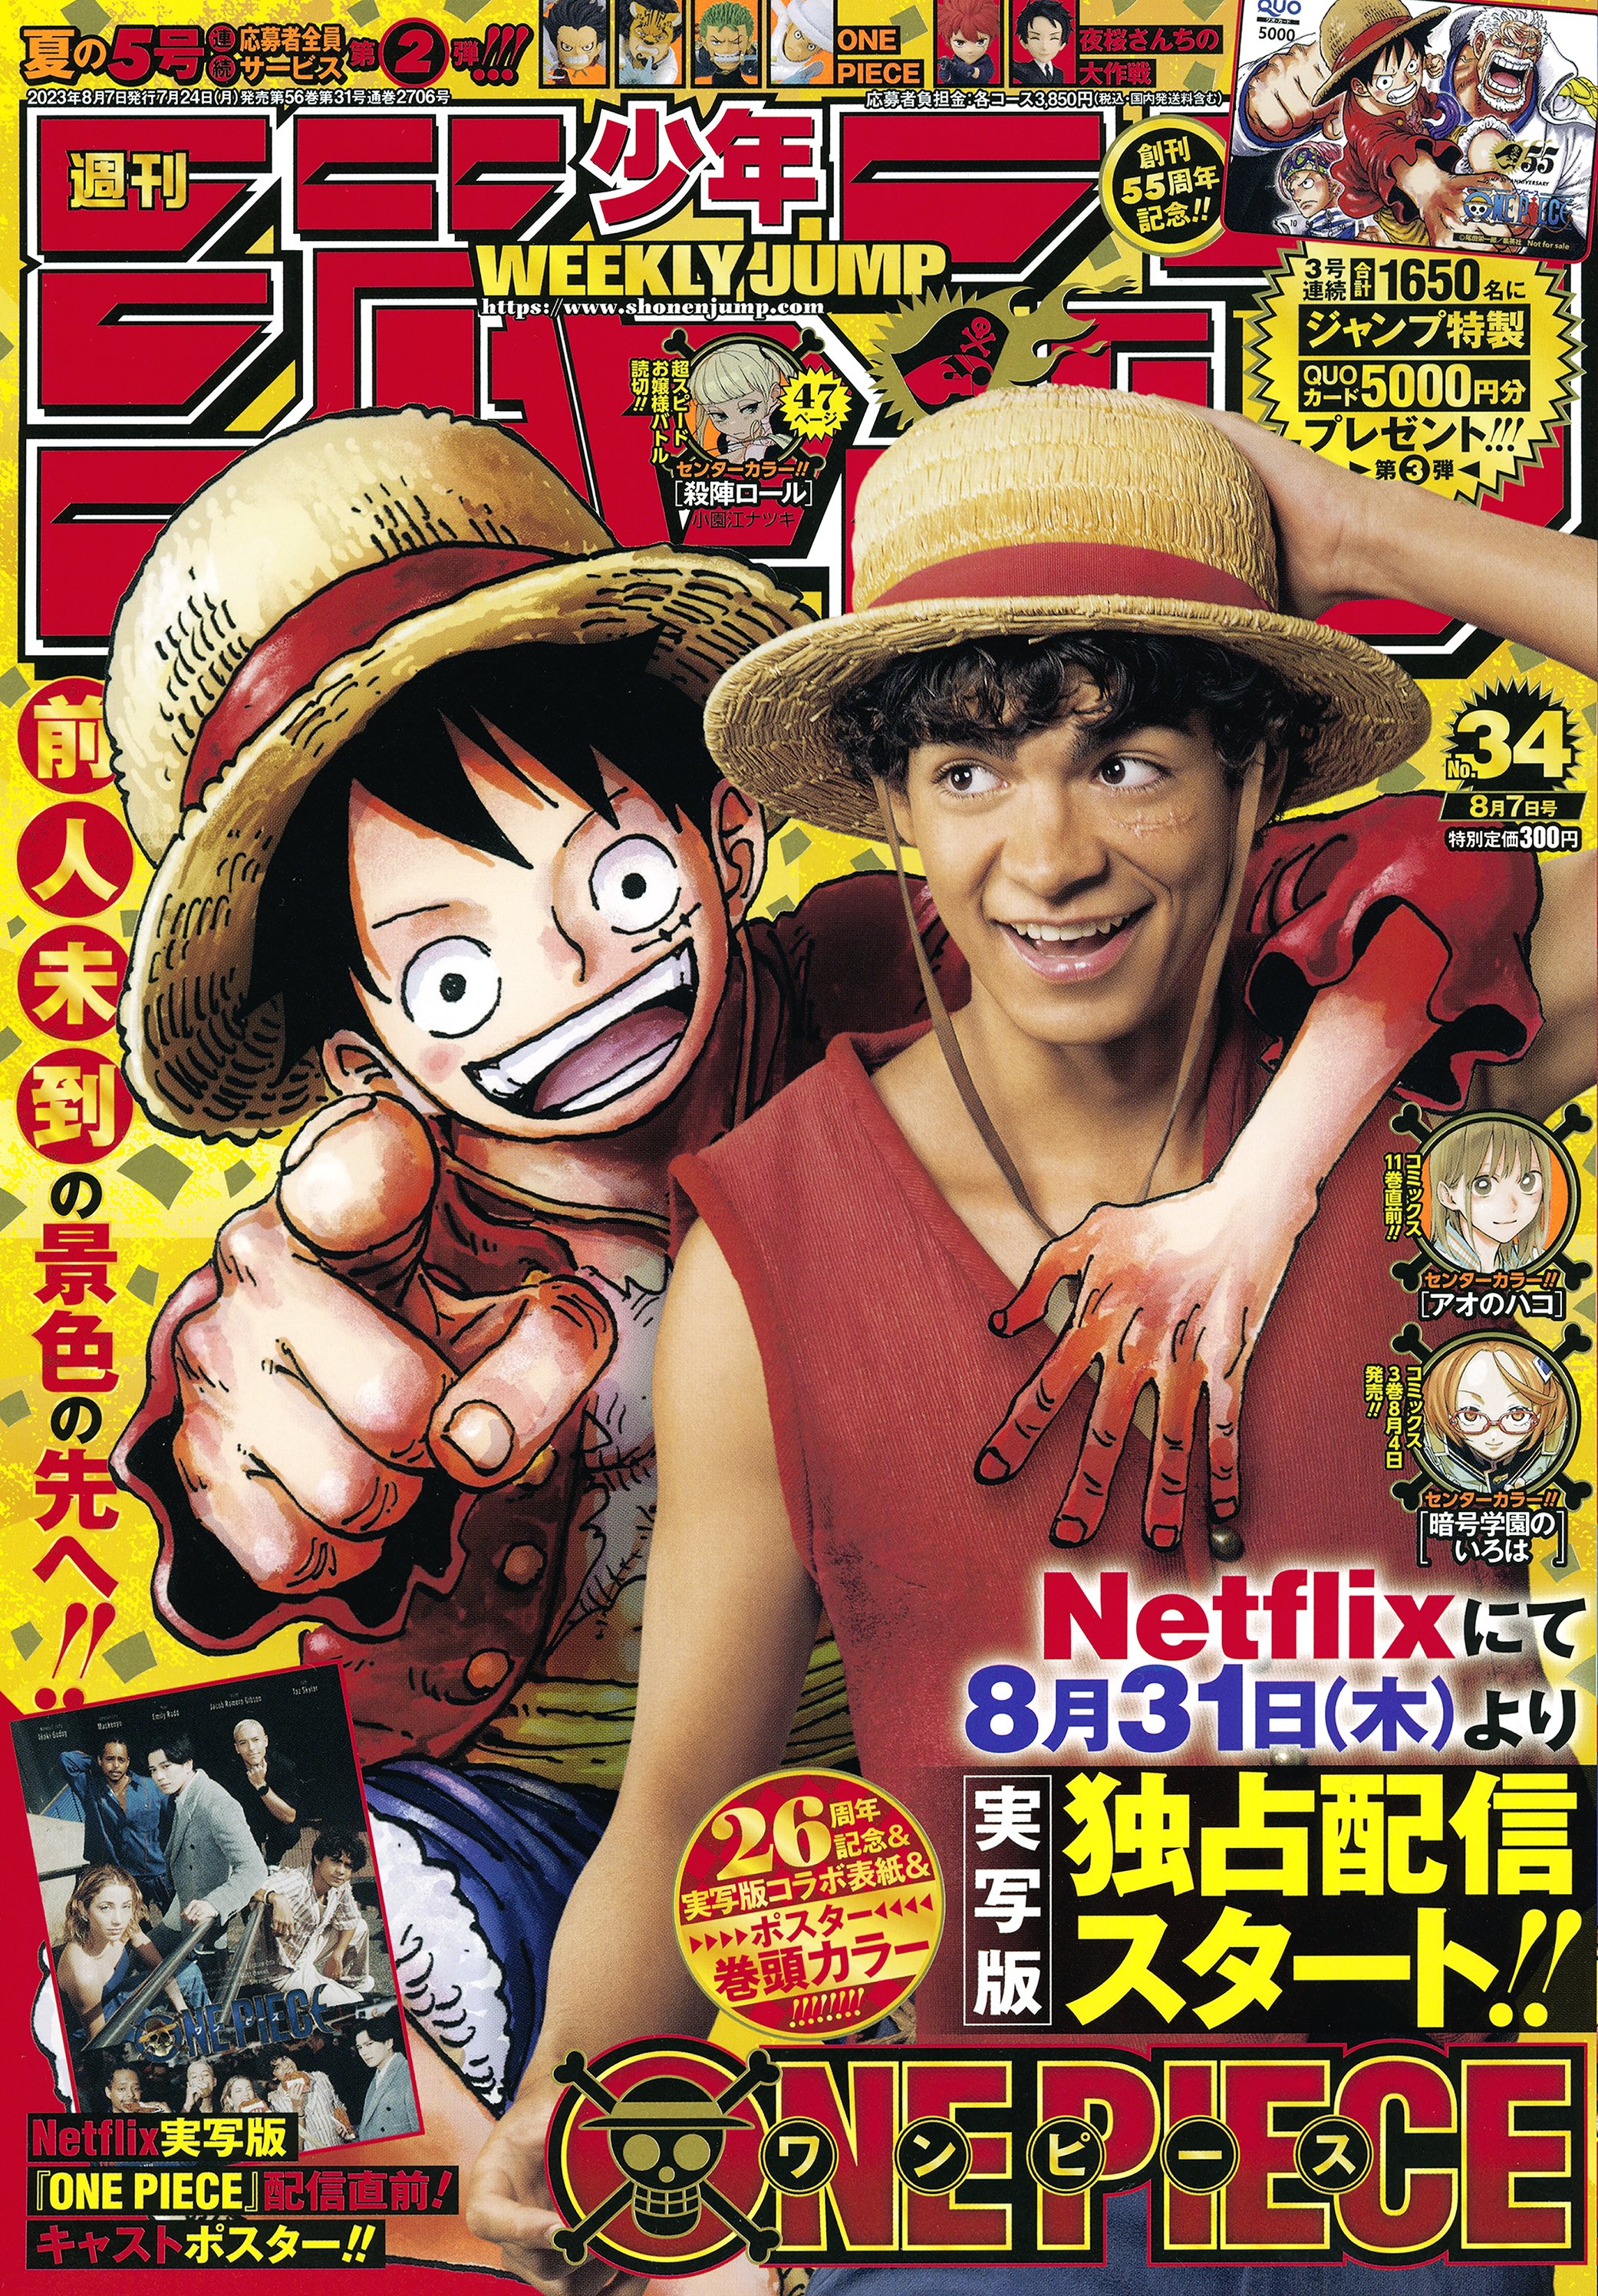 7月24日発売「週刊少年ジャンプ」は「ONE PIECE」原作✕実写コラボ表紙